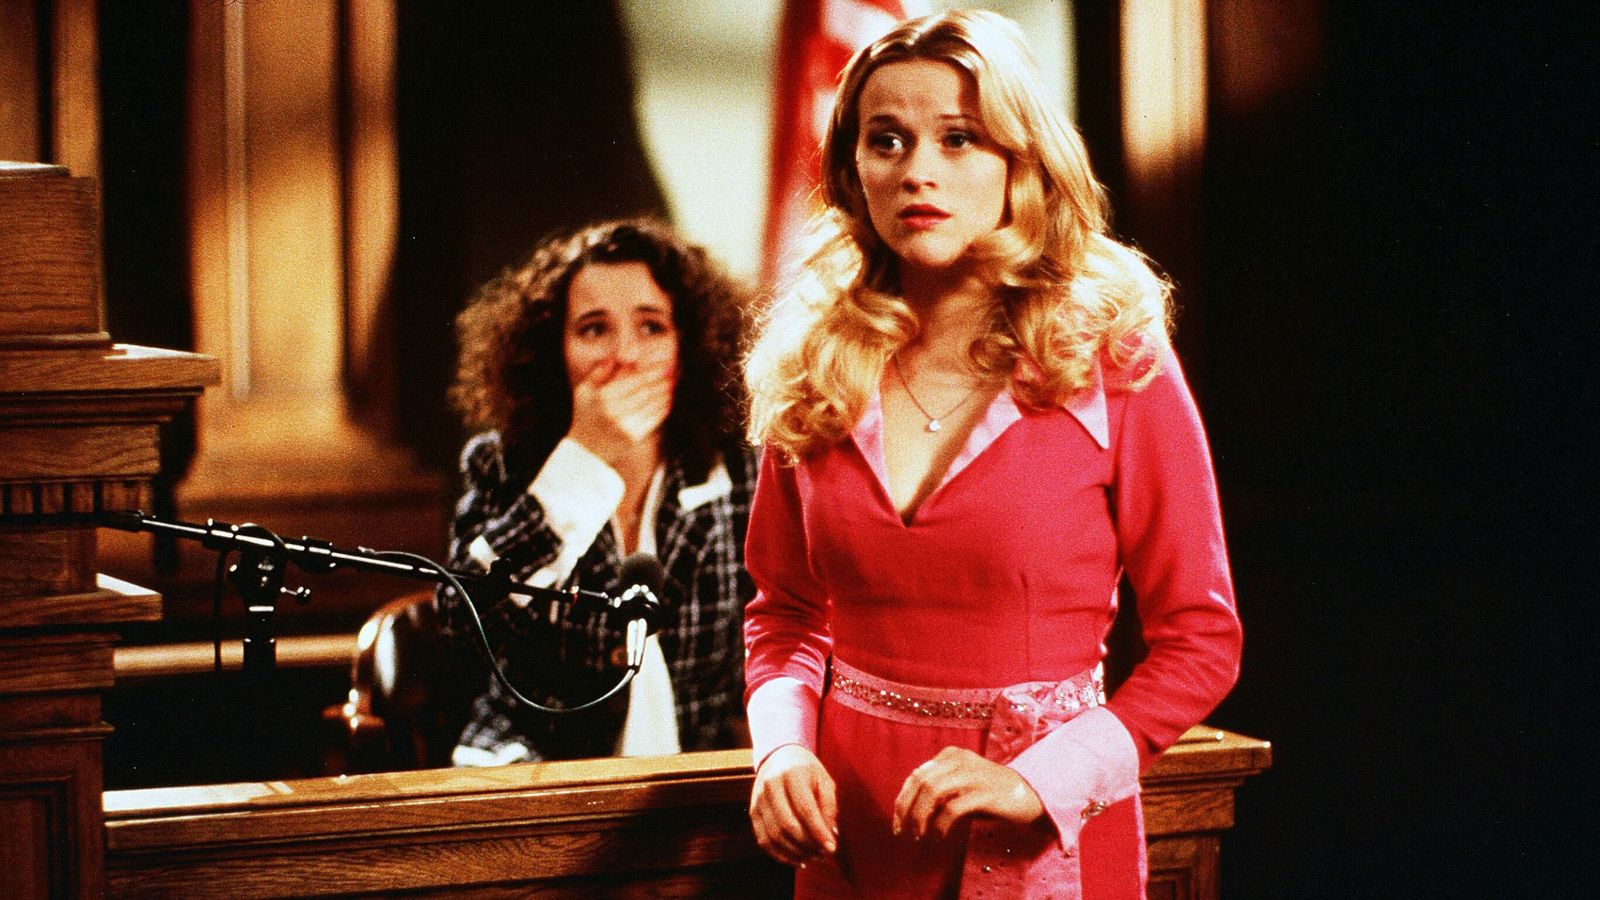 Le prequel de Legally Blonde annoncé par Reese Witherspoon – après Elle Woods dans les années 90 |  Actualités Ents & Arts